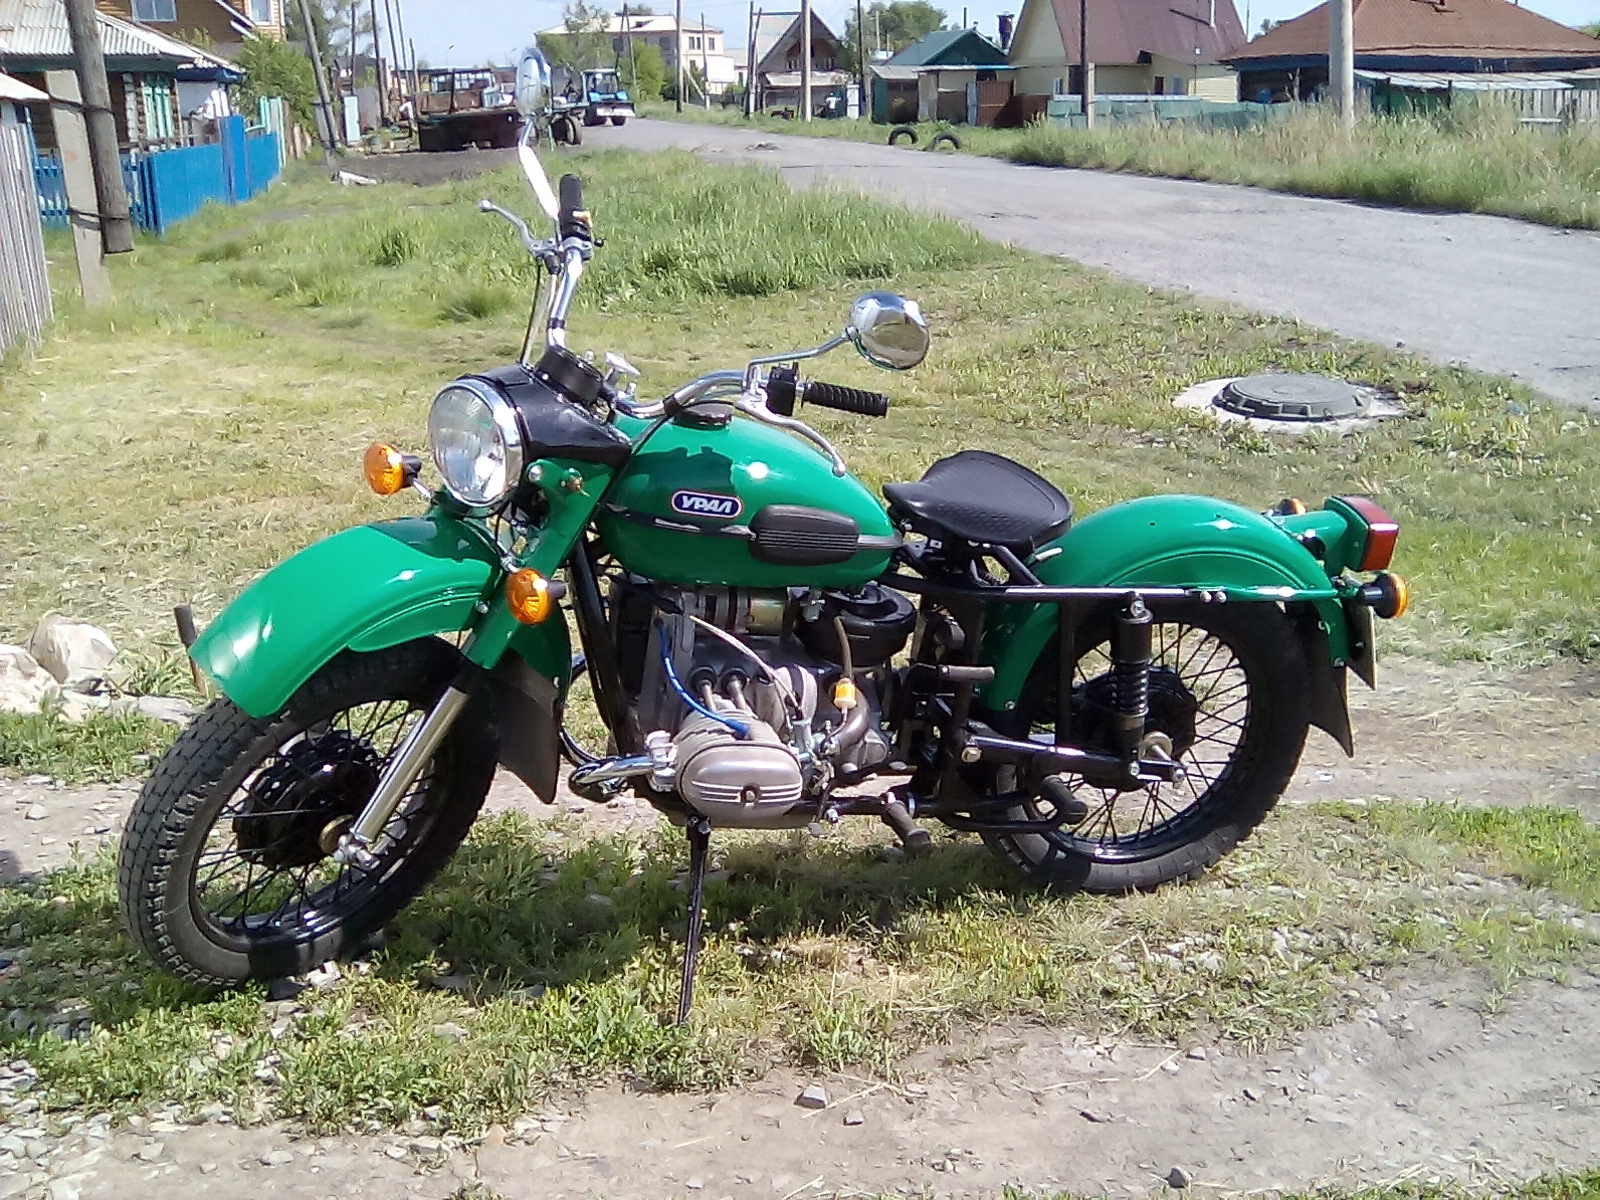 Купить мотоцикл в пензенской области